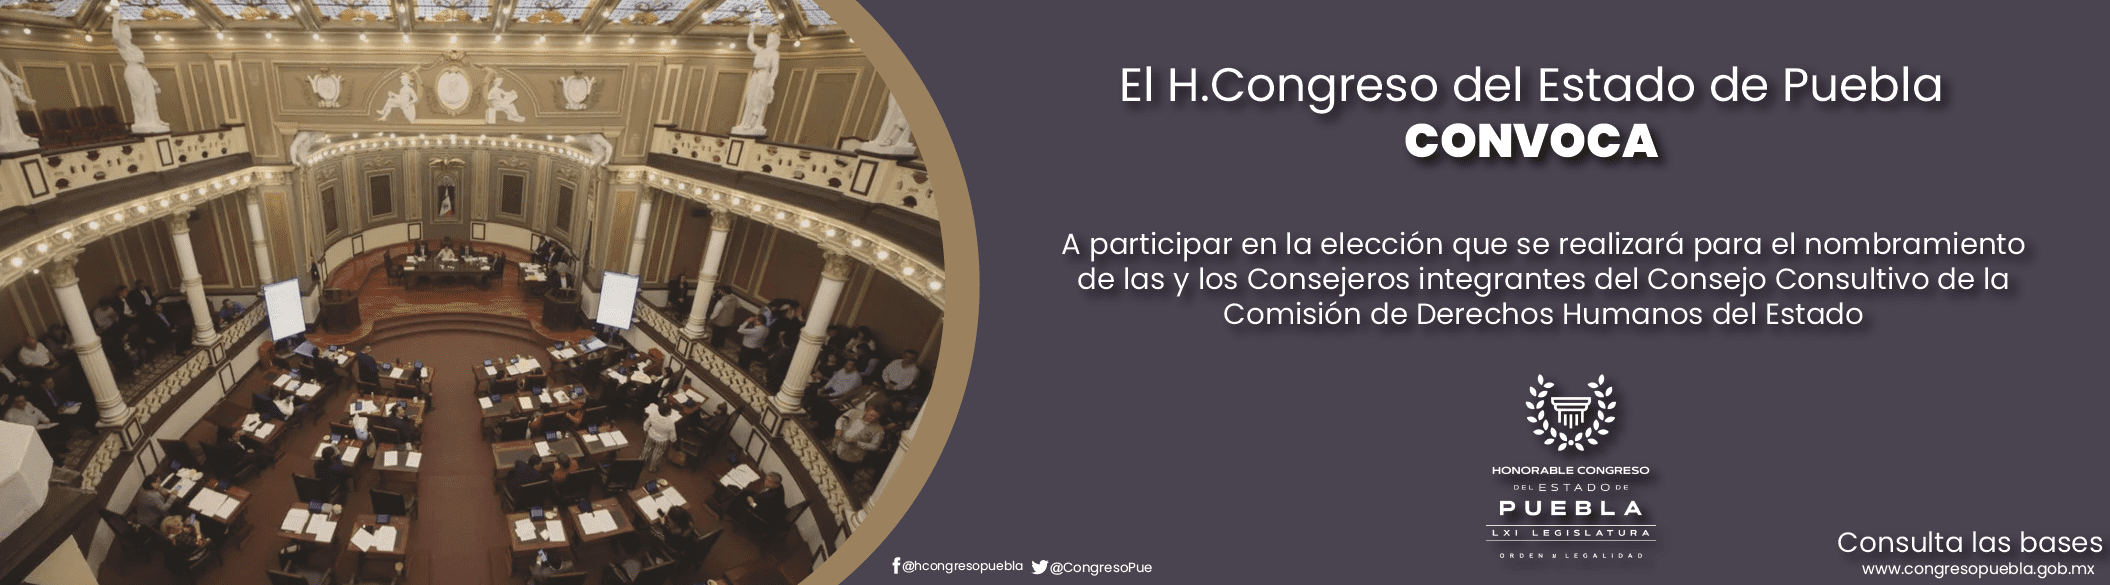 Convocatoria del H. Congreso del Estado de Puebla.